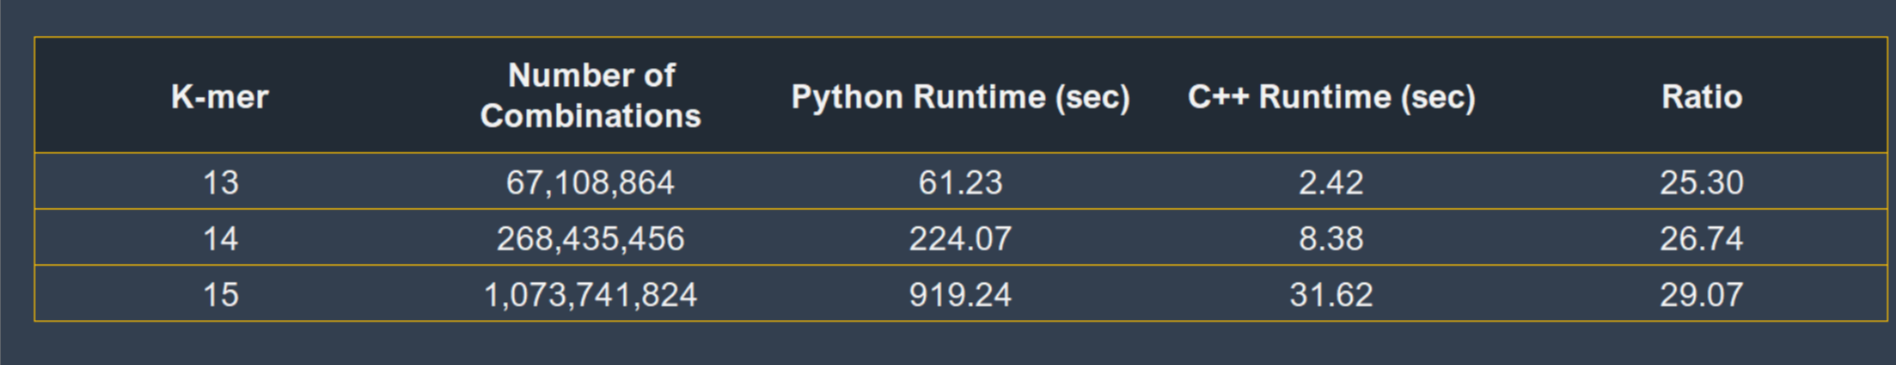 таблца результатов сравнения скорости Python и C++